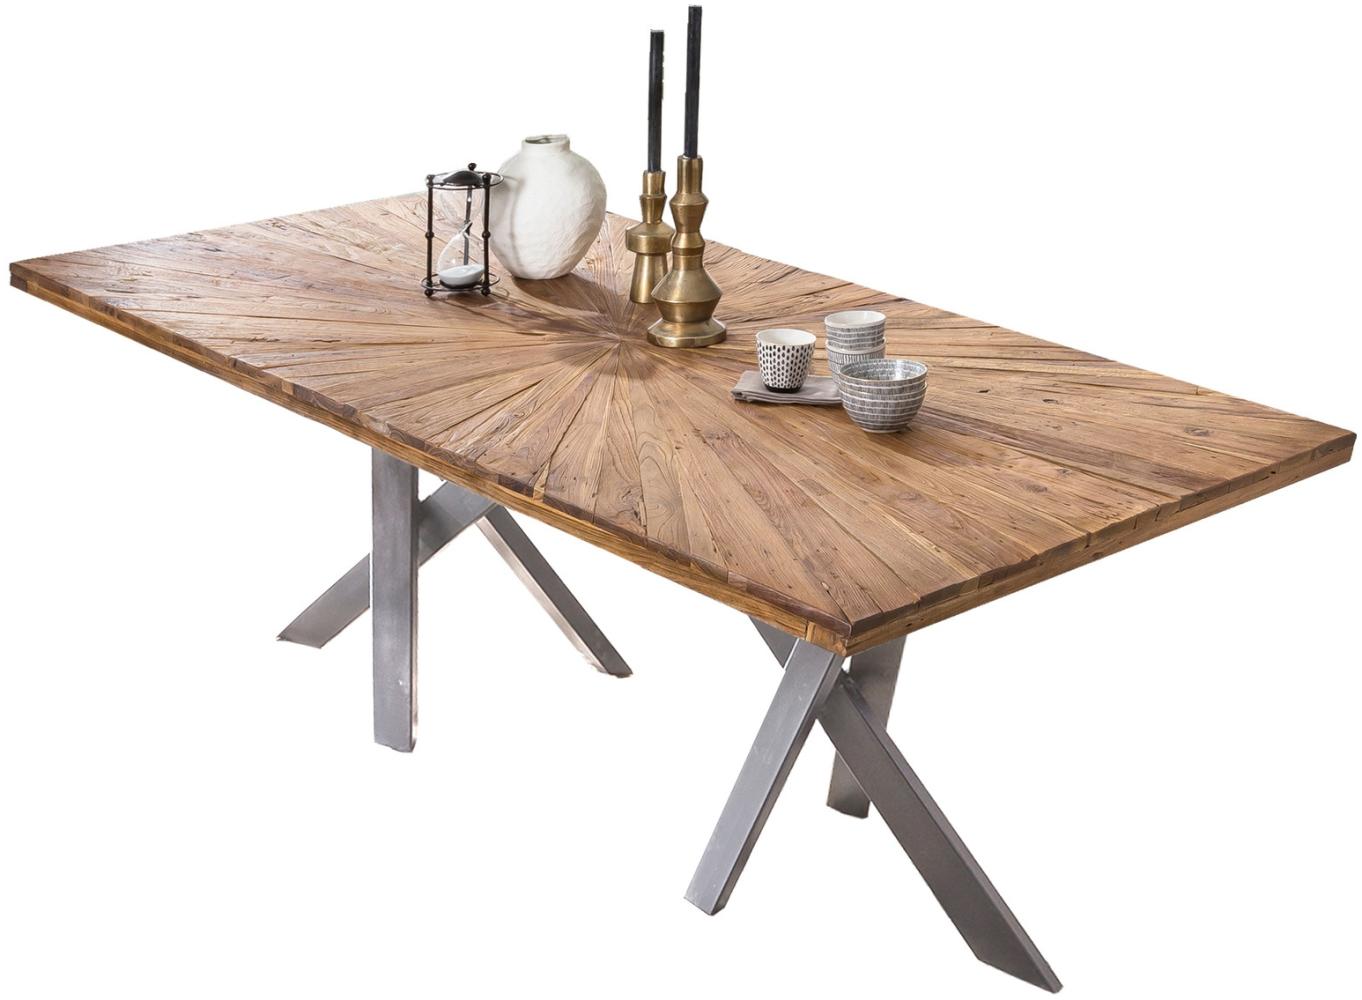 Sit Möbel Tische & Bänke Tisch 220x100 cm, Platte Teak natur, Gestell Metall antiksilber Bild 1